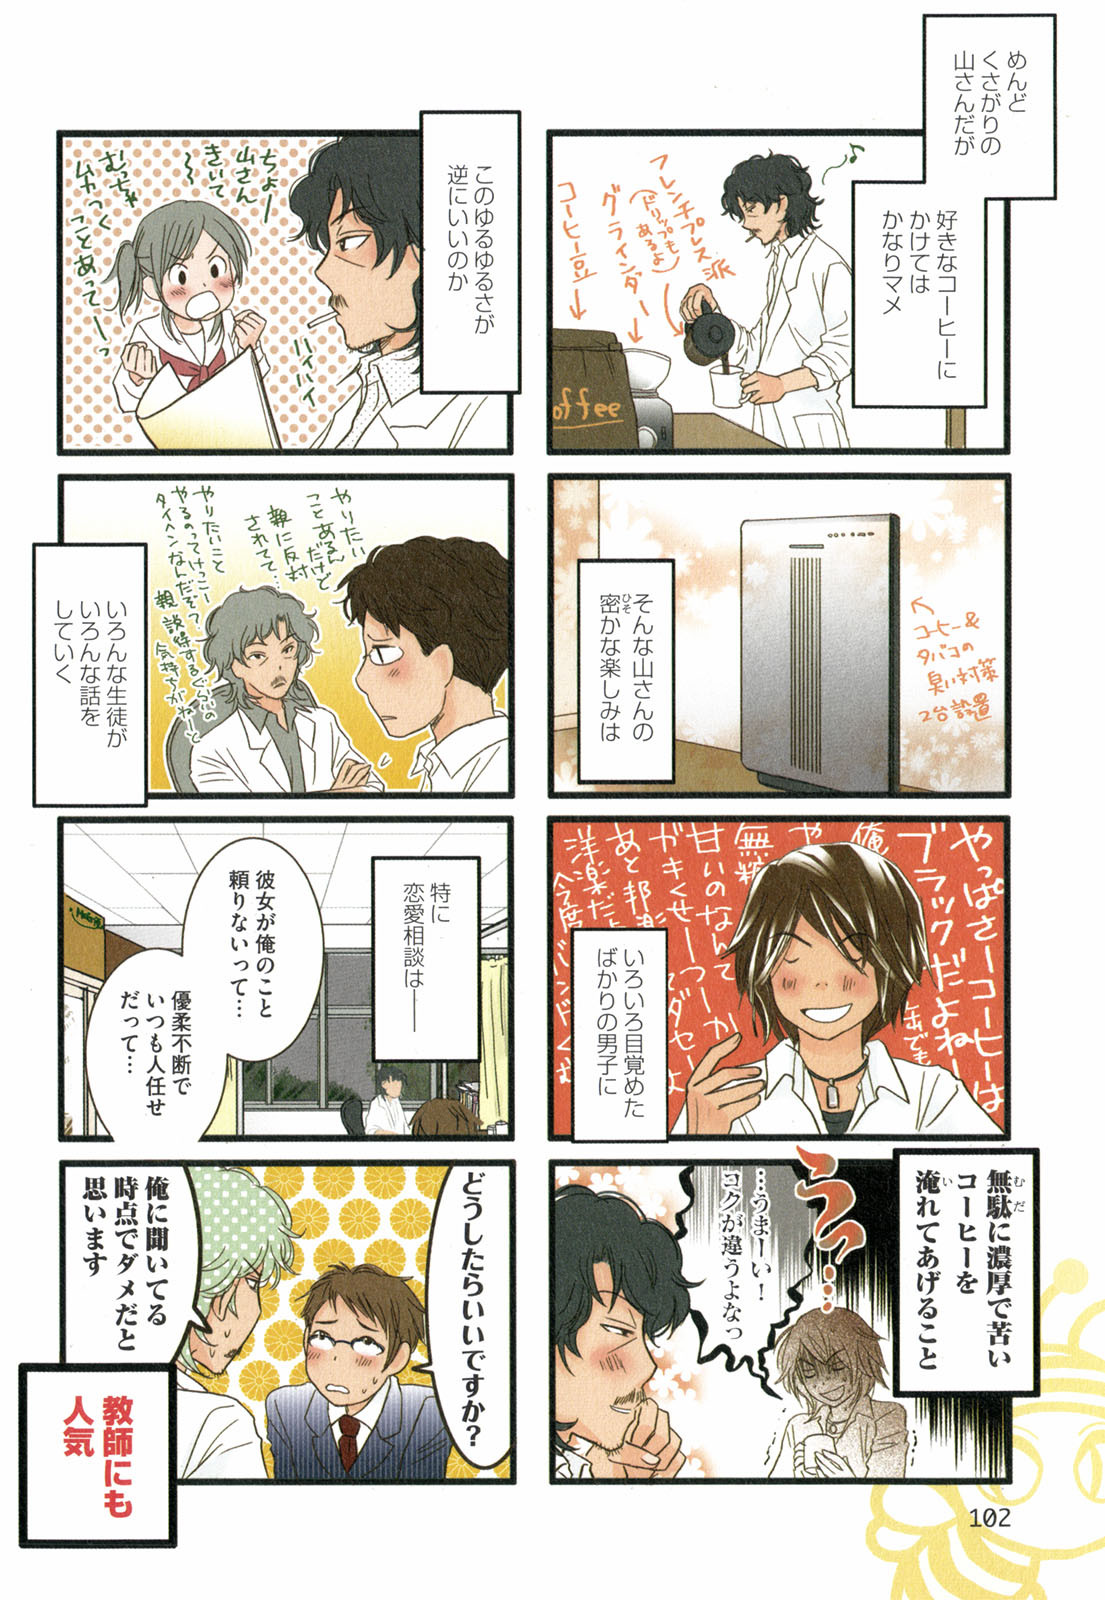 Tonari No Neneko San となりのネネコさん Chapter Volume 02 Page 103 Raw Sen Manga